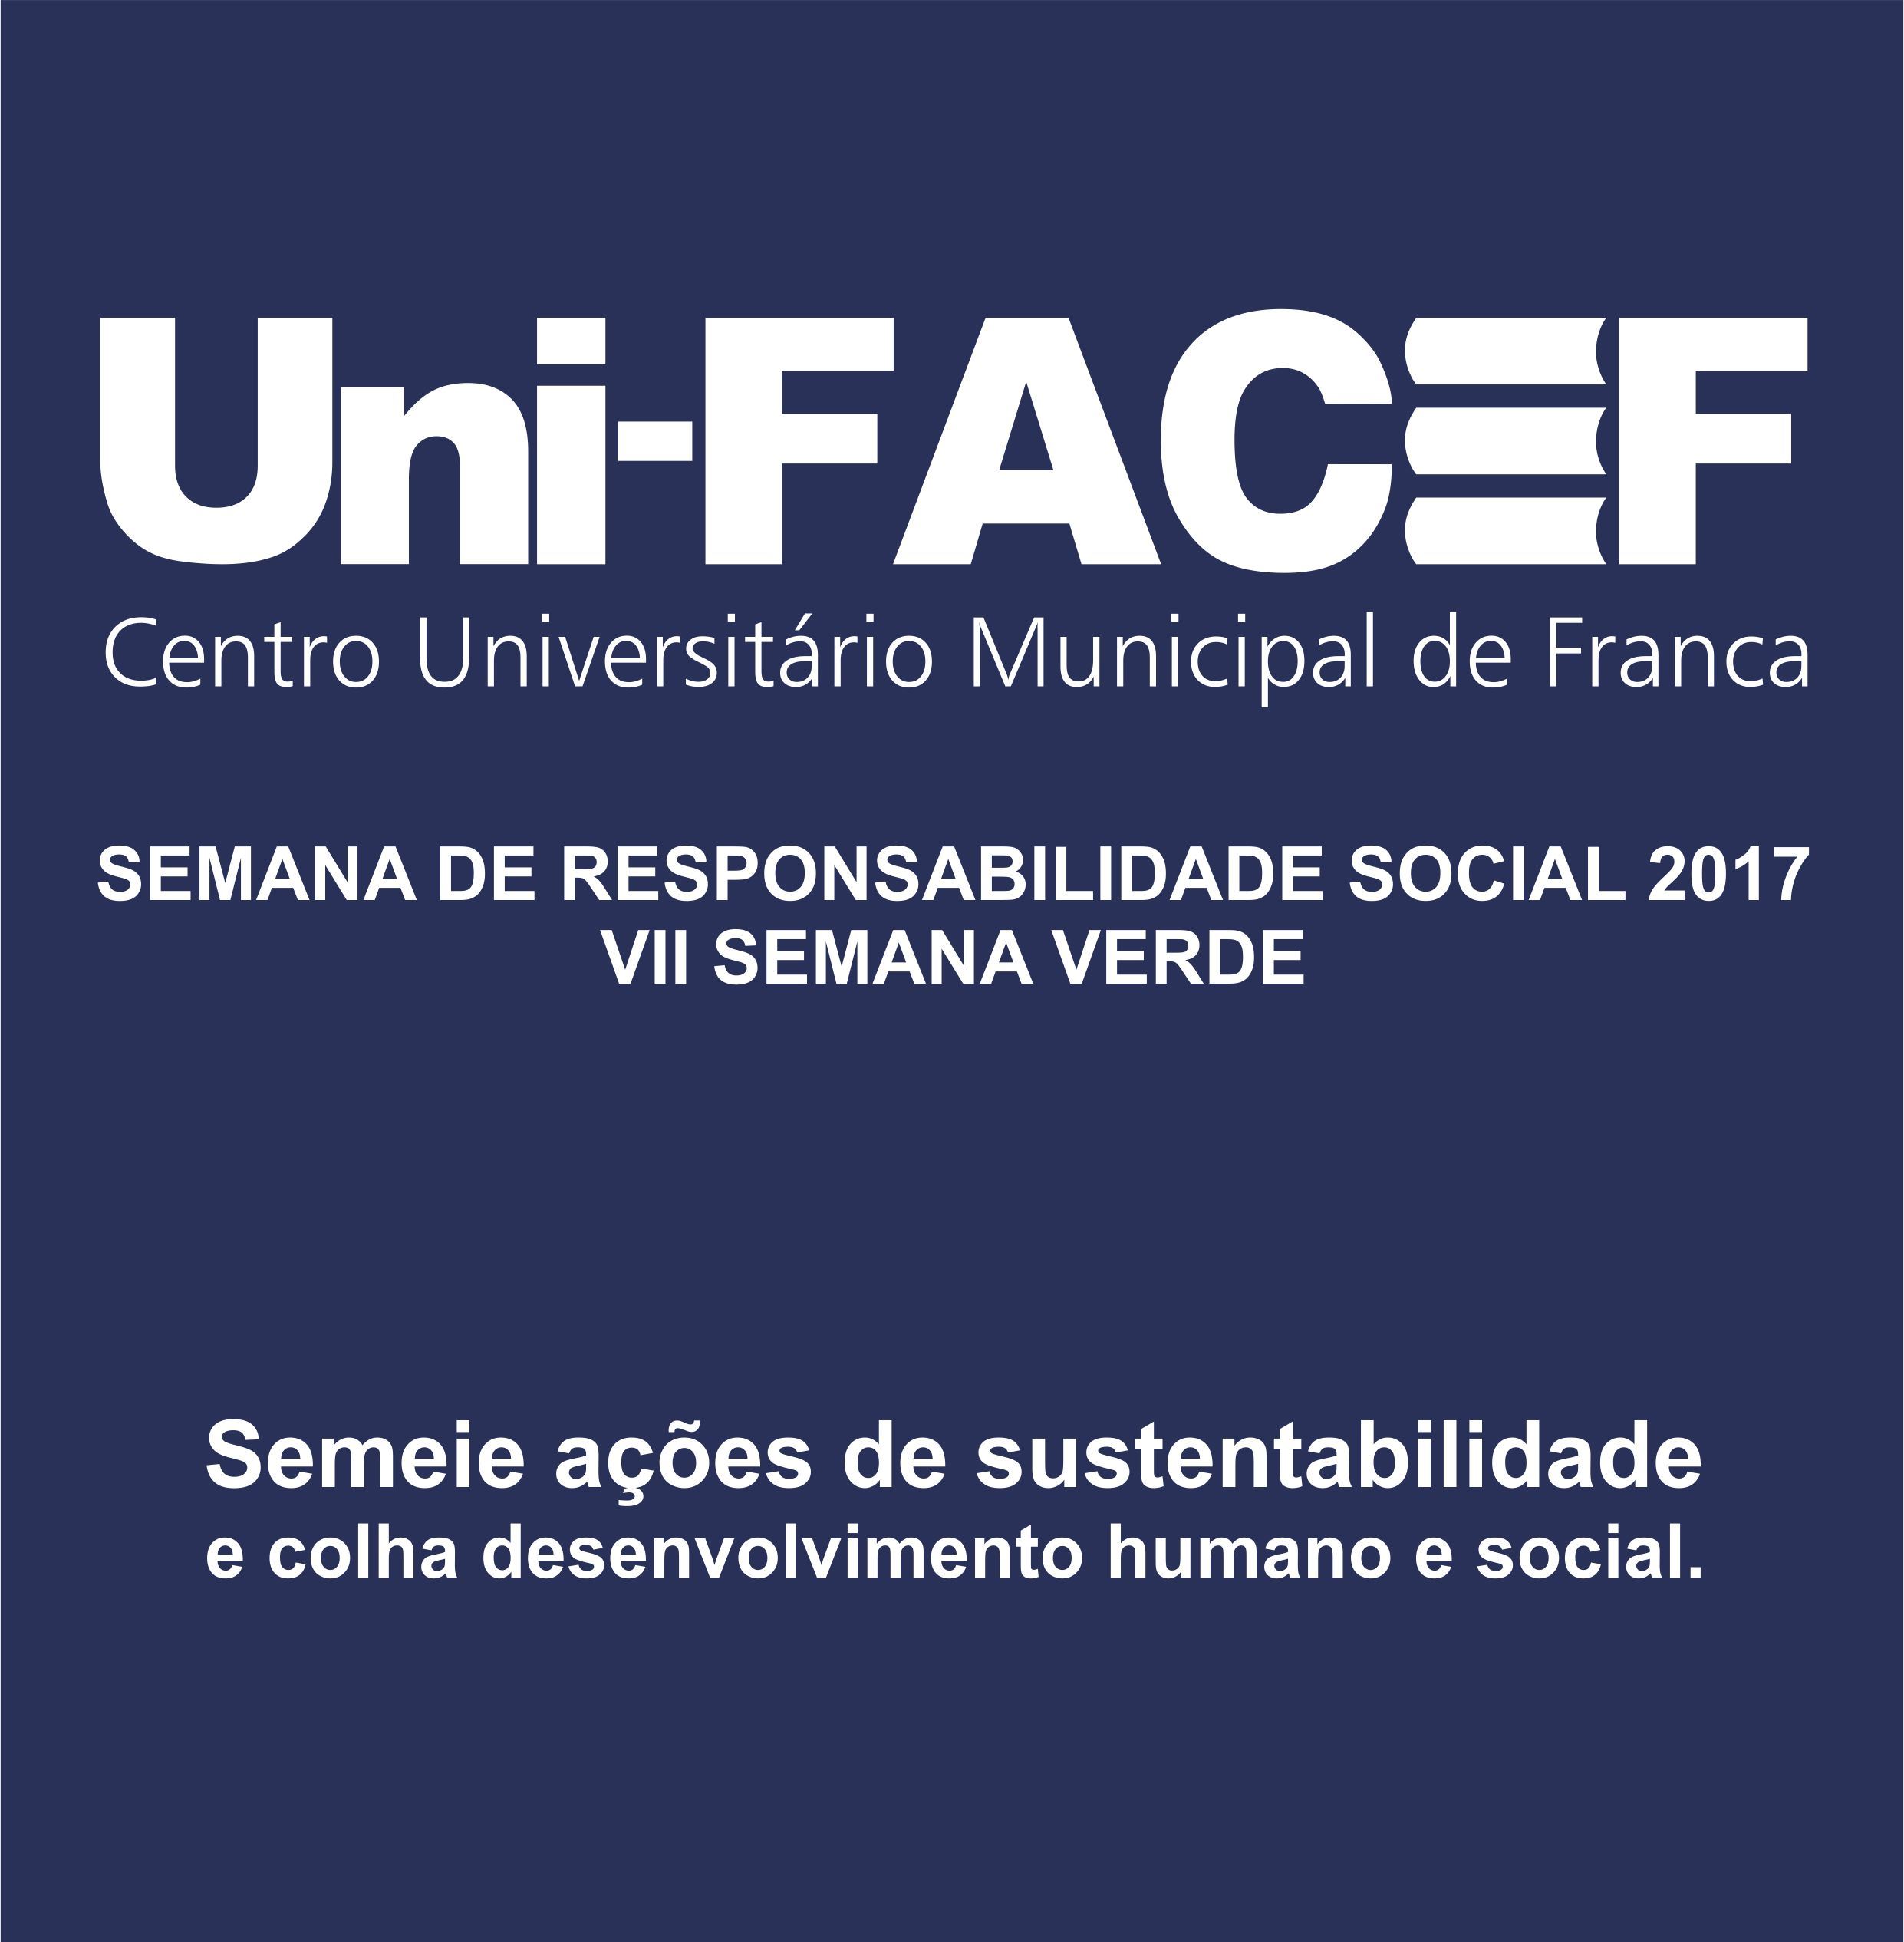 Semana de Responsabilidade Uni-FACEF 2017 começou